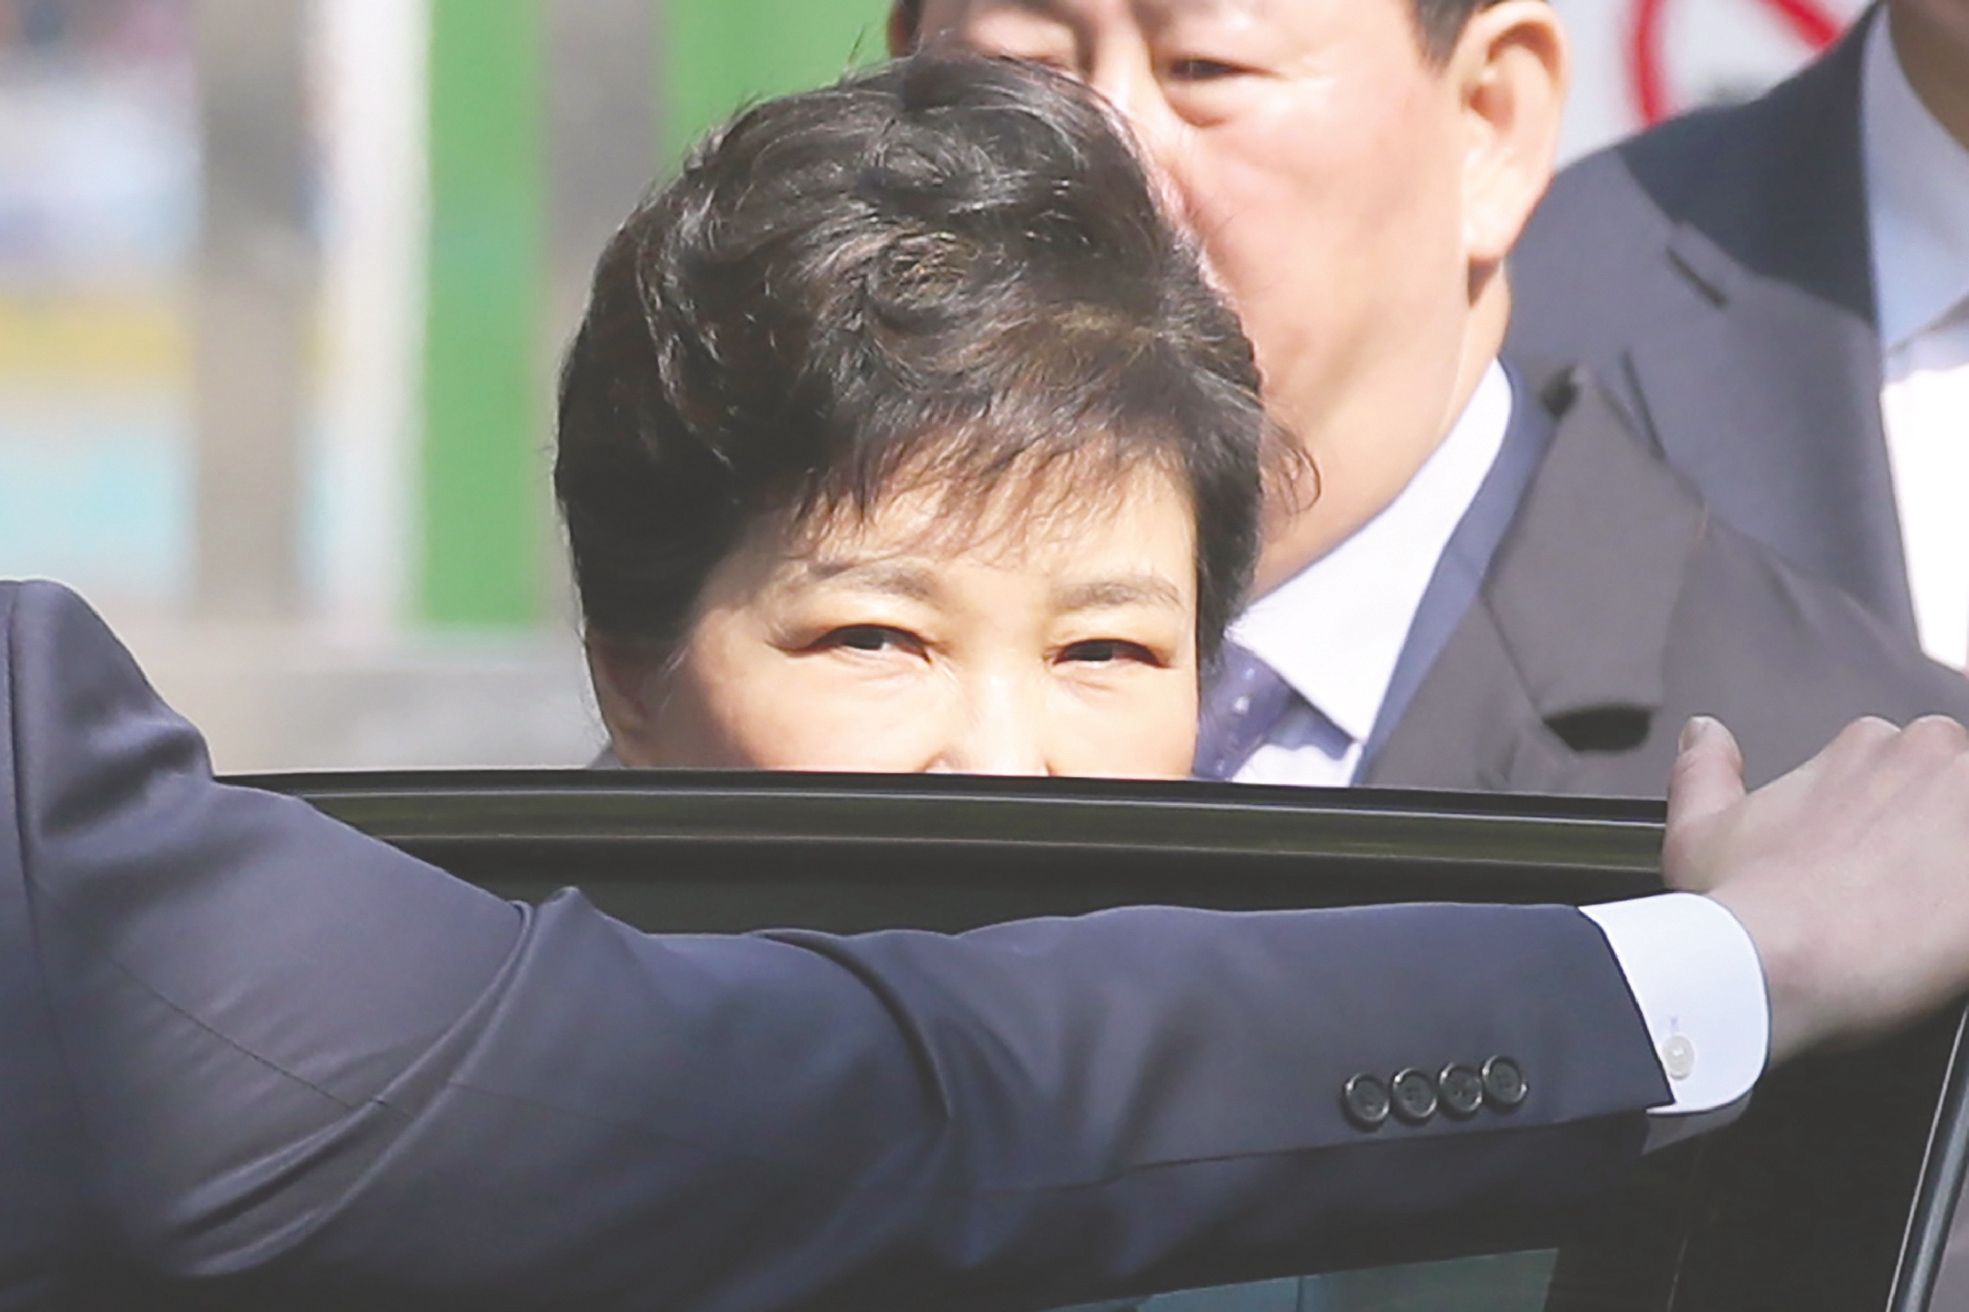 韩国前总统朴槿惠胞妹宣布参选下届总统